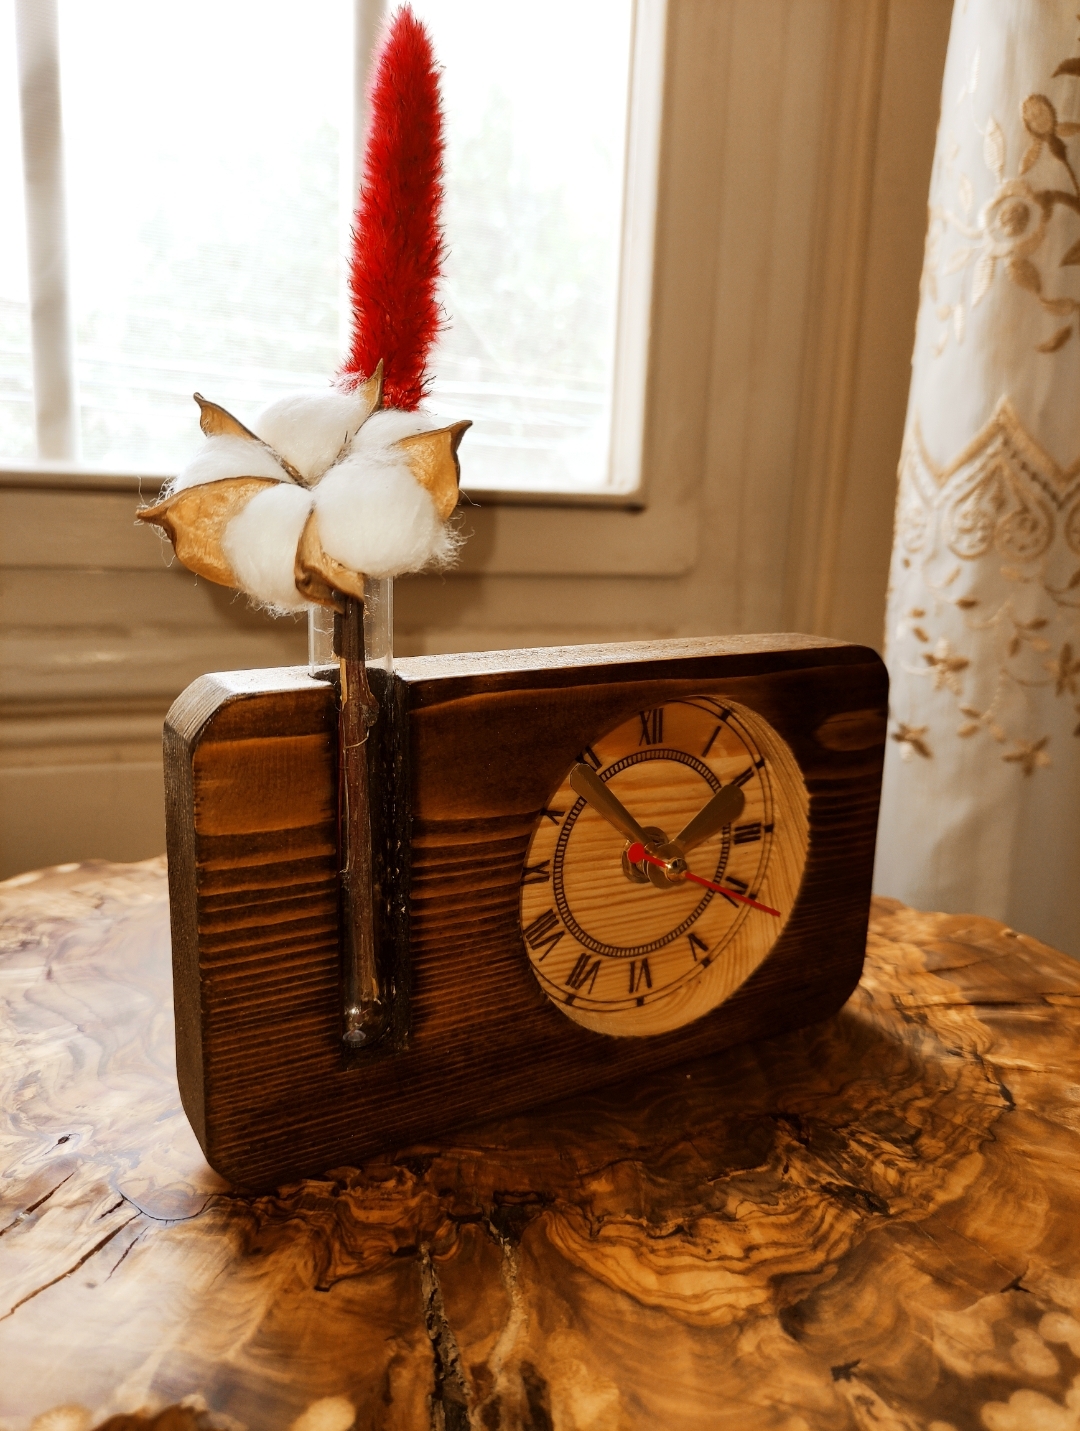 ساعت رومیزی تلفیق شده با گلدان شیشه نمایان قابلیت حک دلخواه روی صفحه ساعت